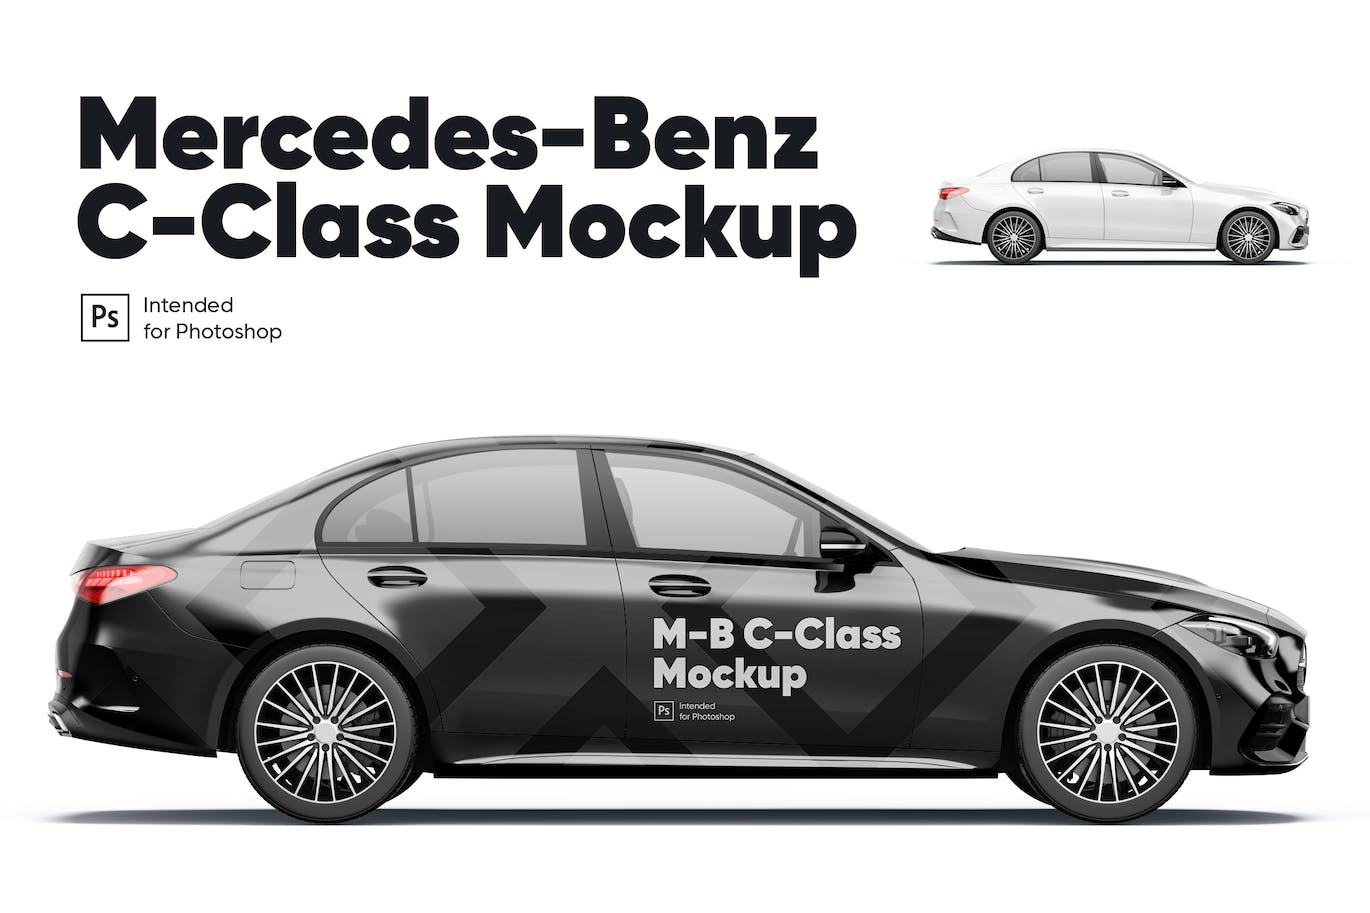 梅赛德斯奔驰C级轿车车身广告设计样机 Mercedes-Benz C-Class Mockup 样机素材 第1张